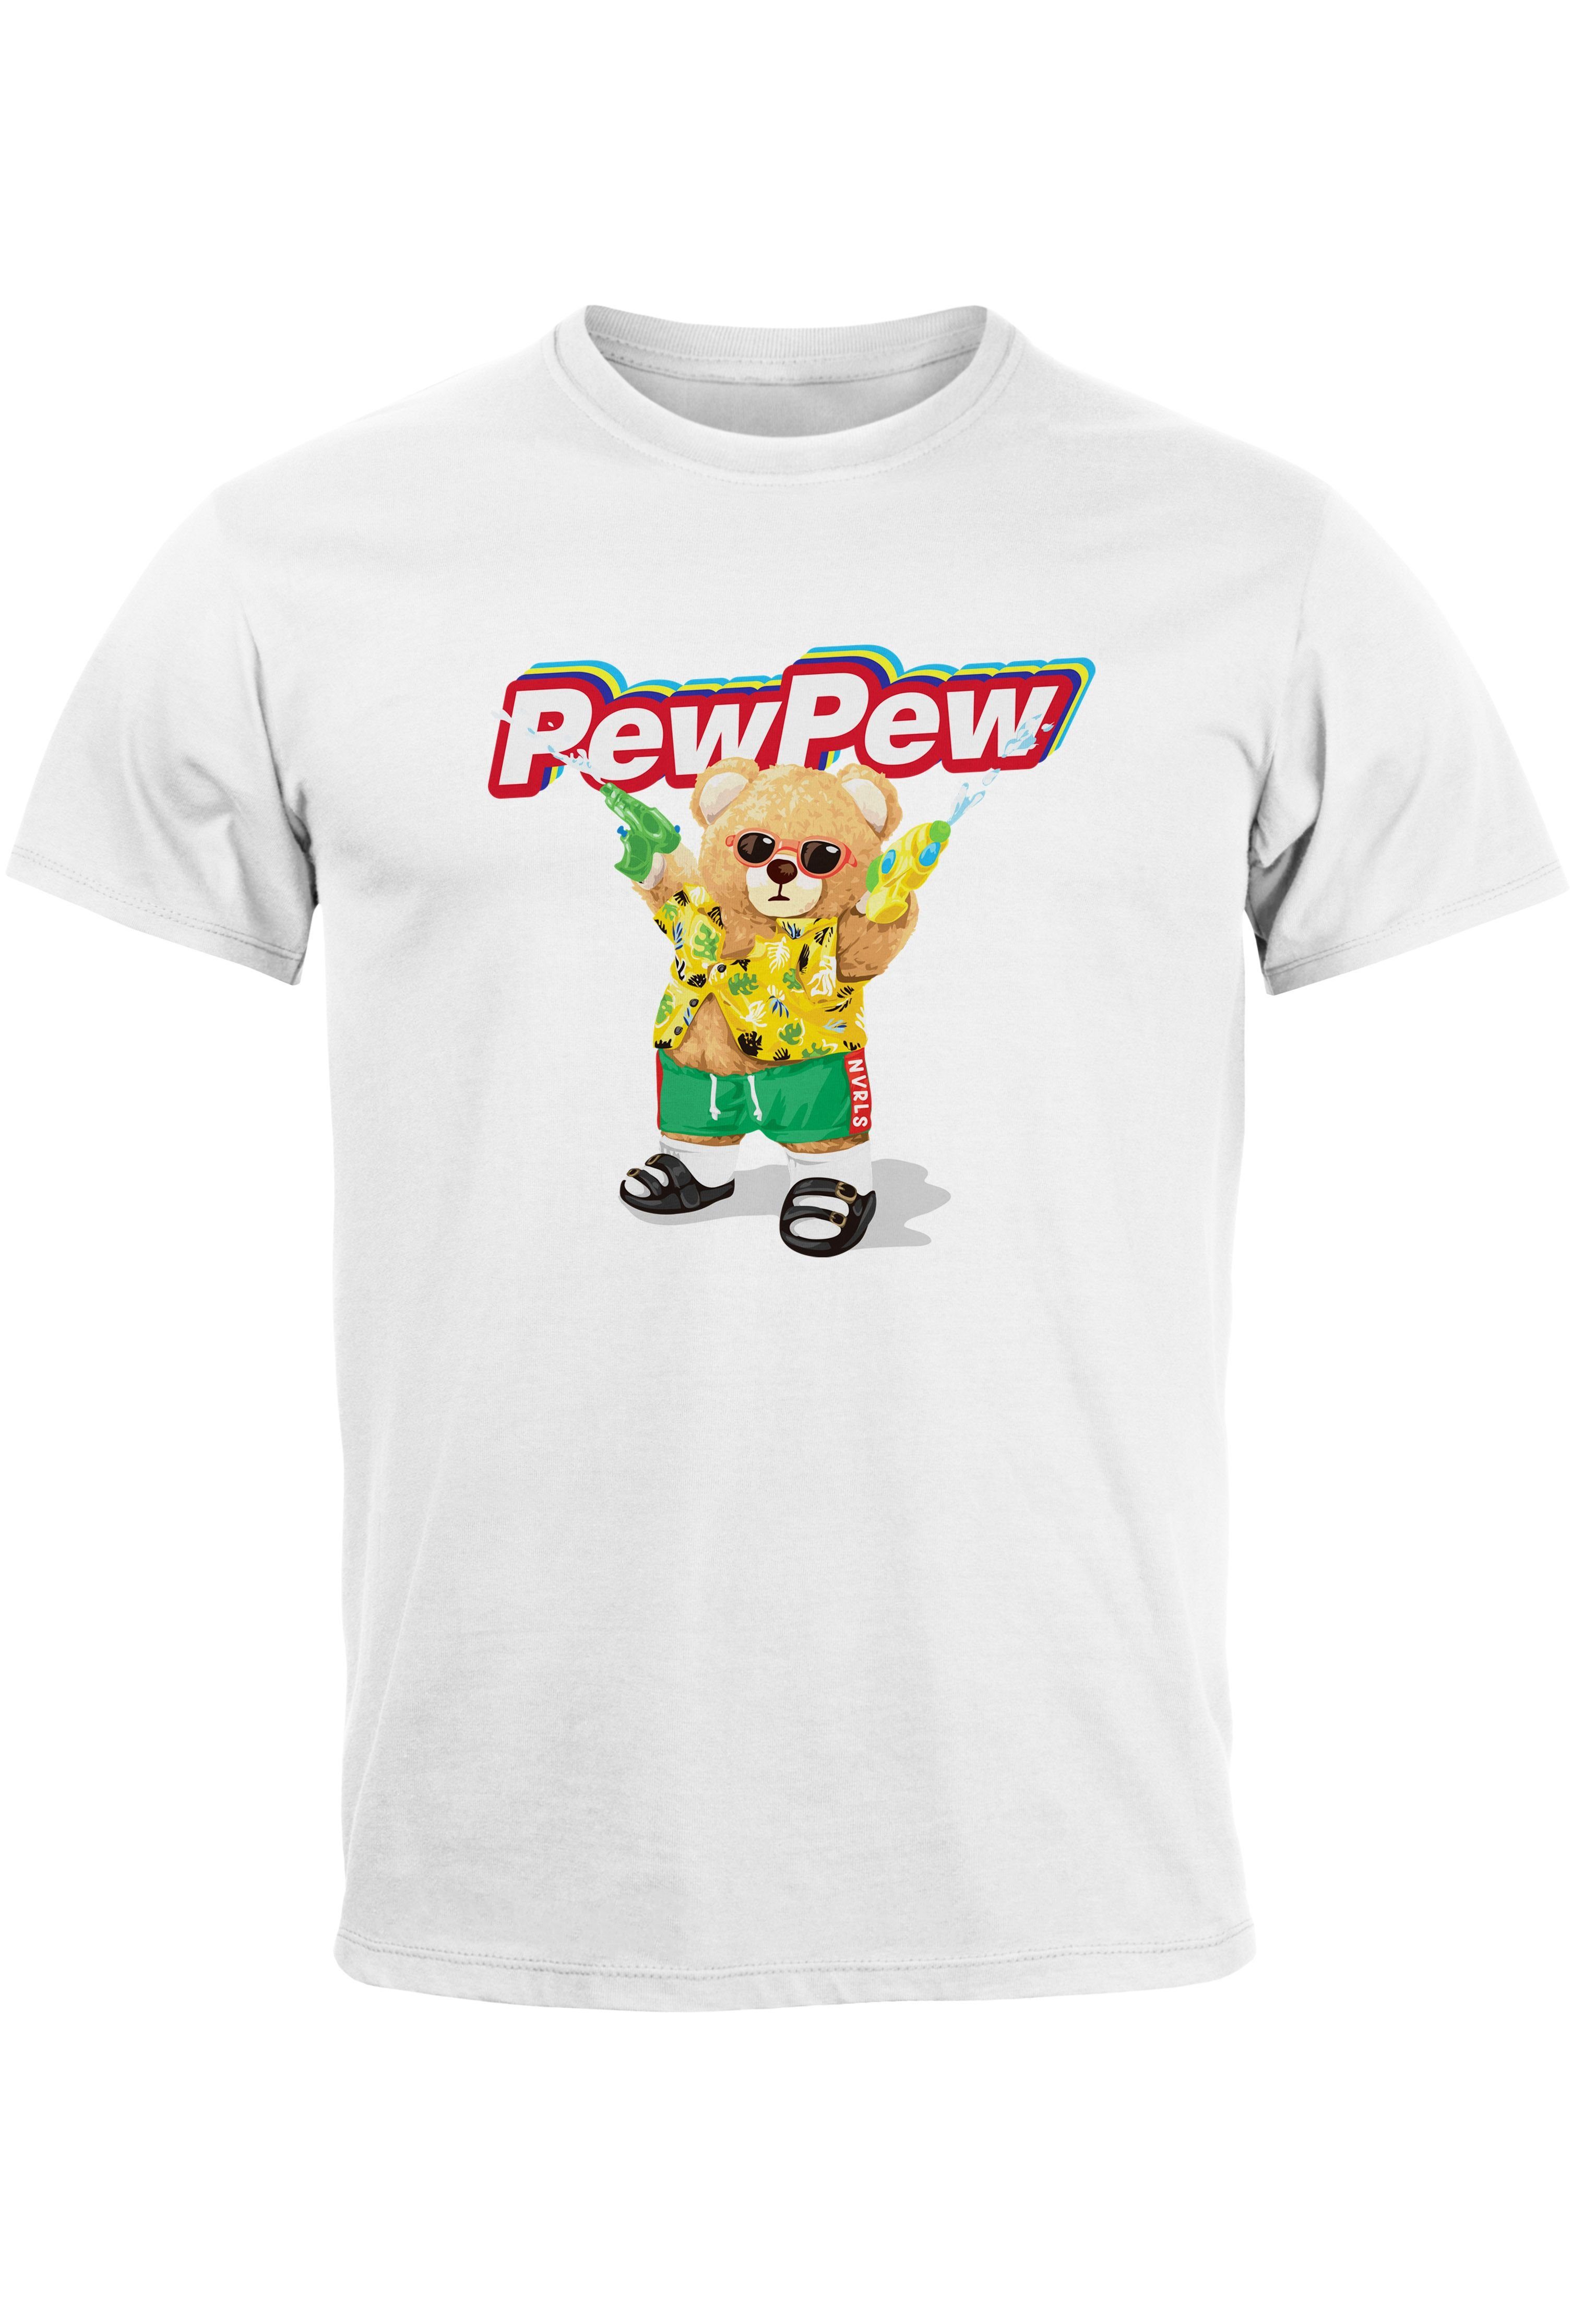 Neverless Print-Shirt Herren weiß Bär Motiv Printshirt Fas Pew mit Pew Aufdruck lustig Print Sommer T-Shirt